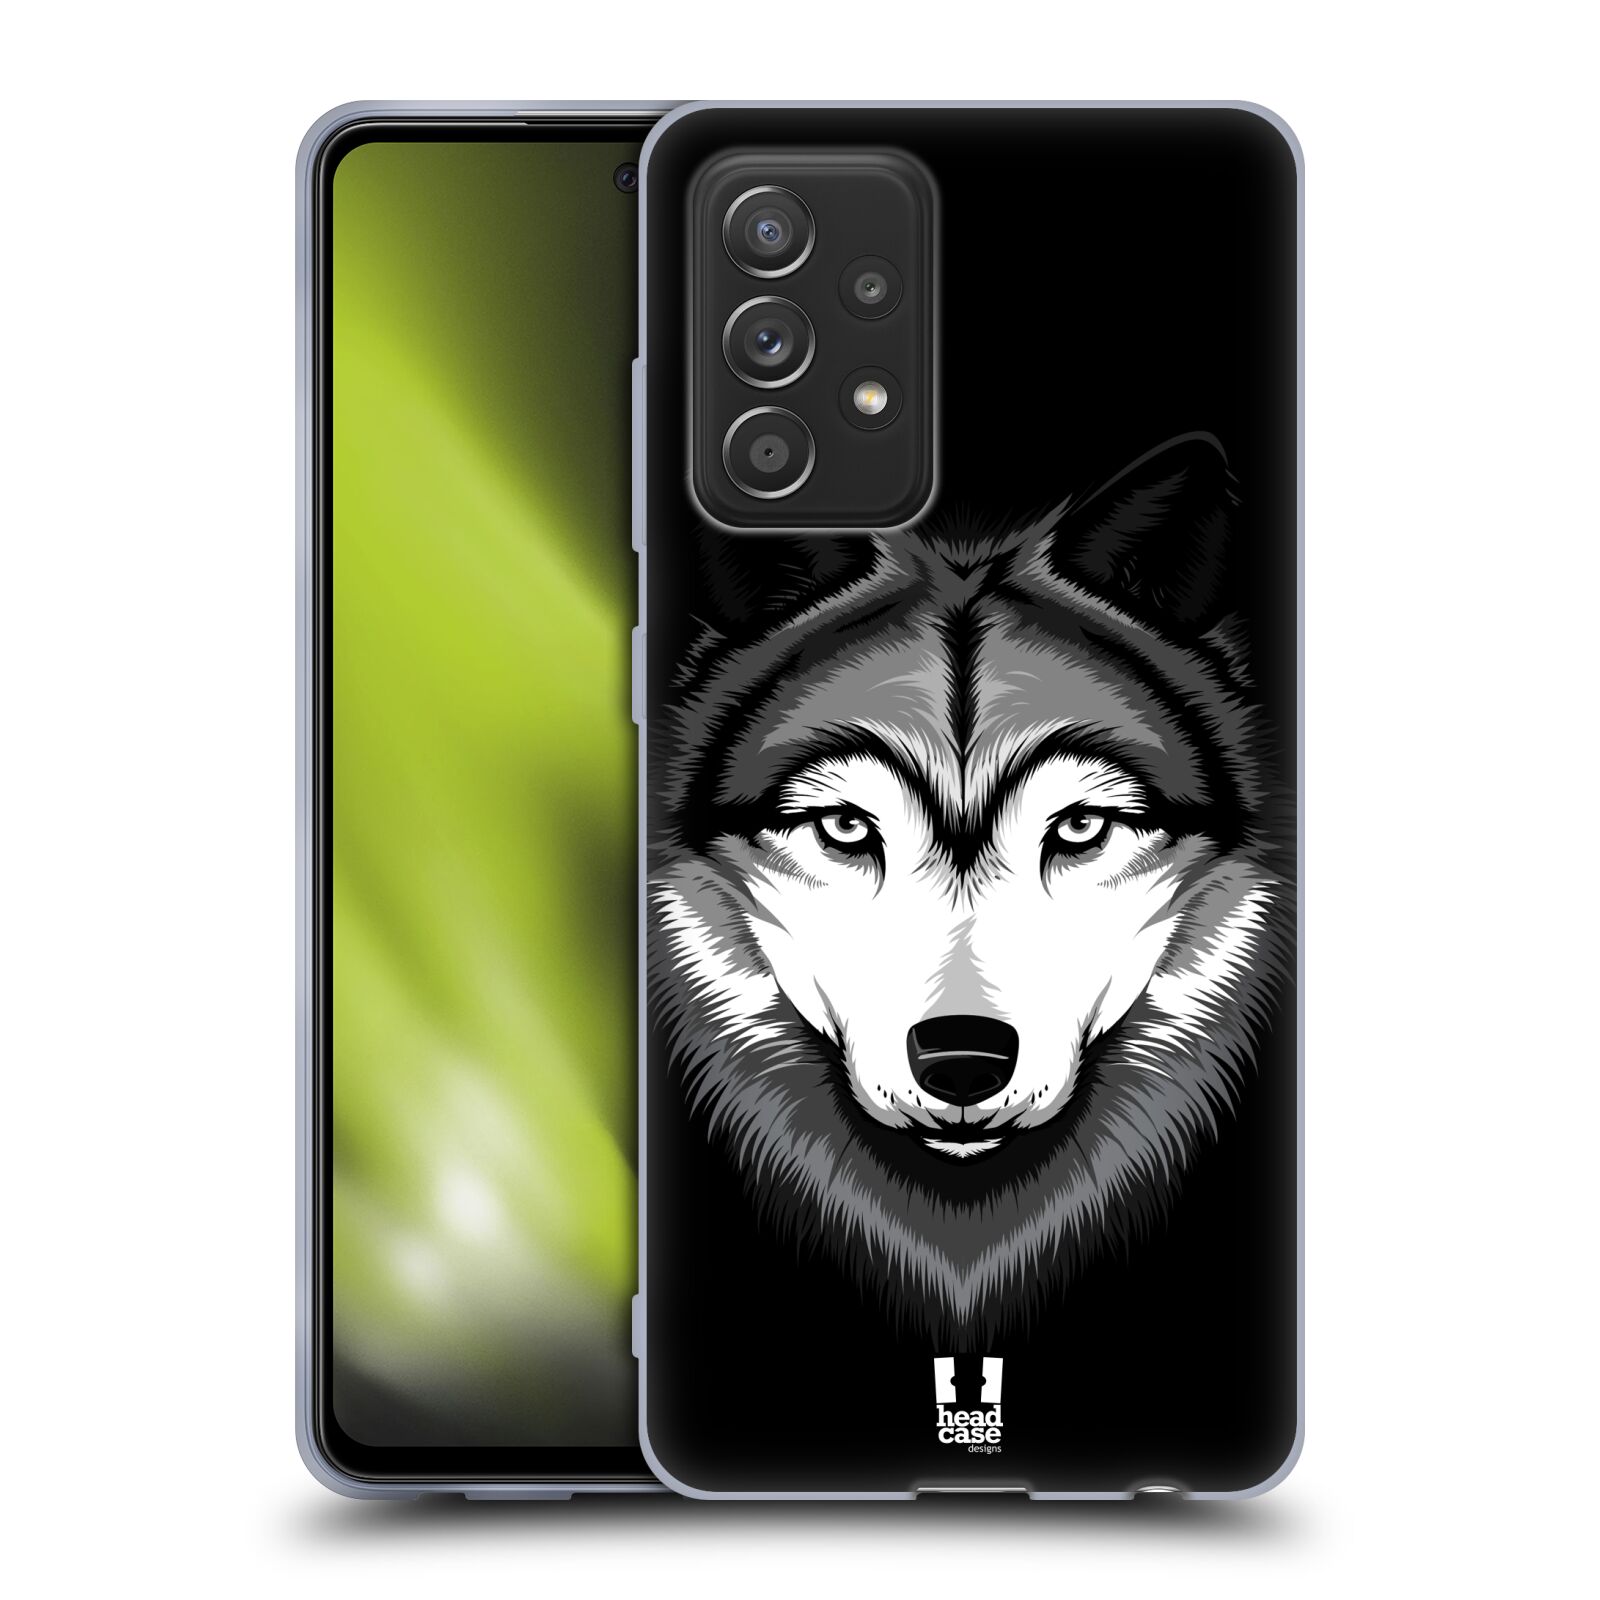 Plastový obal HEAD CASE na mobil Samsung Galaxy A52 / A52 5G / A52s 5G vzor Zvíře kreslená tvář 2 vlk